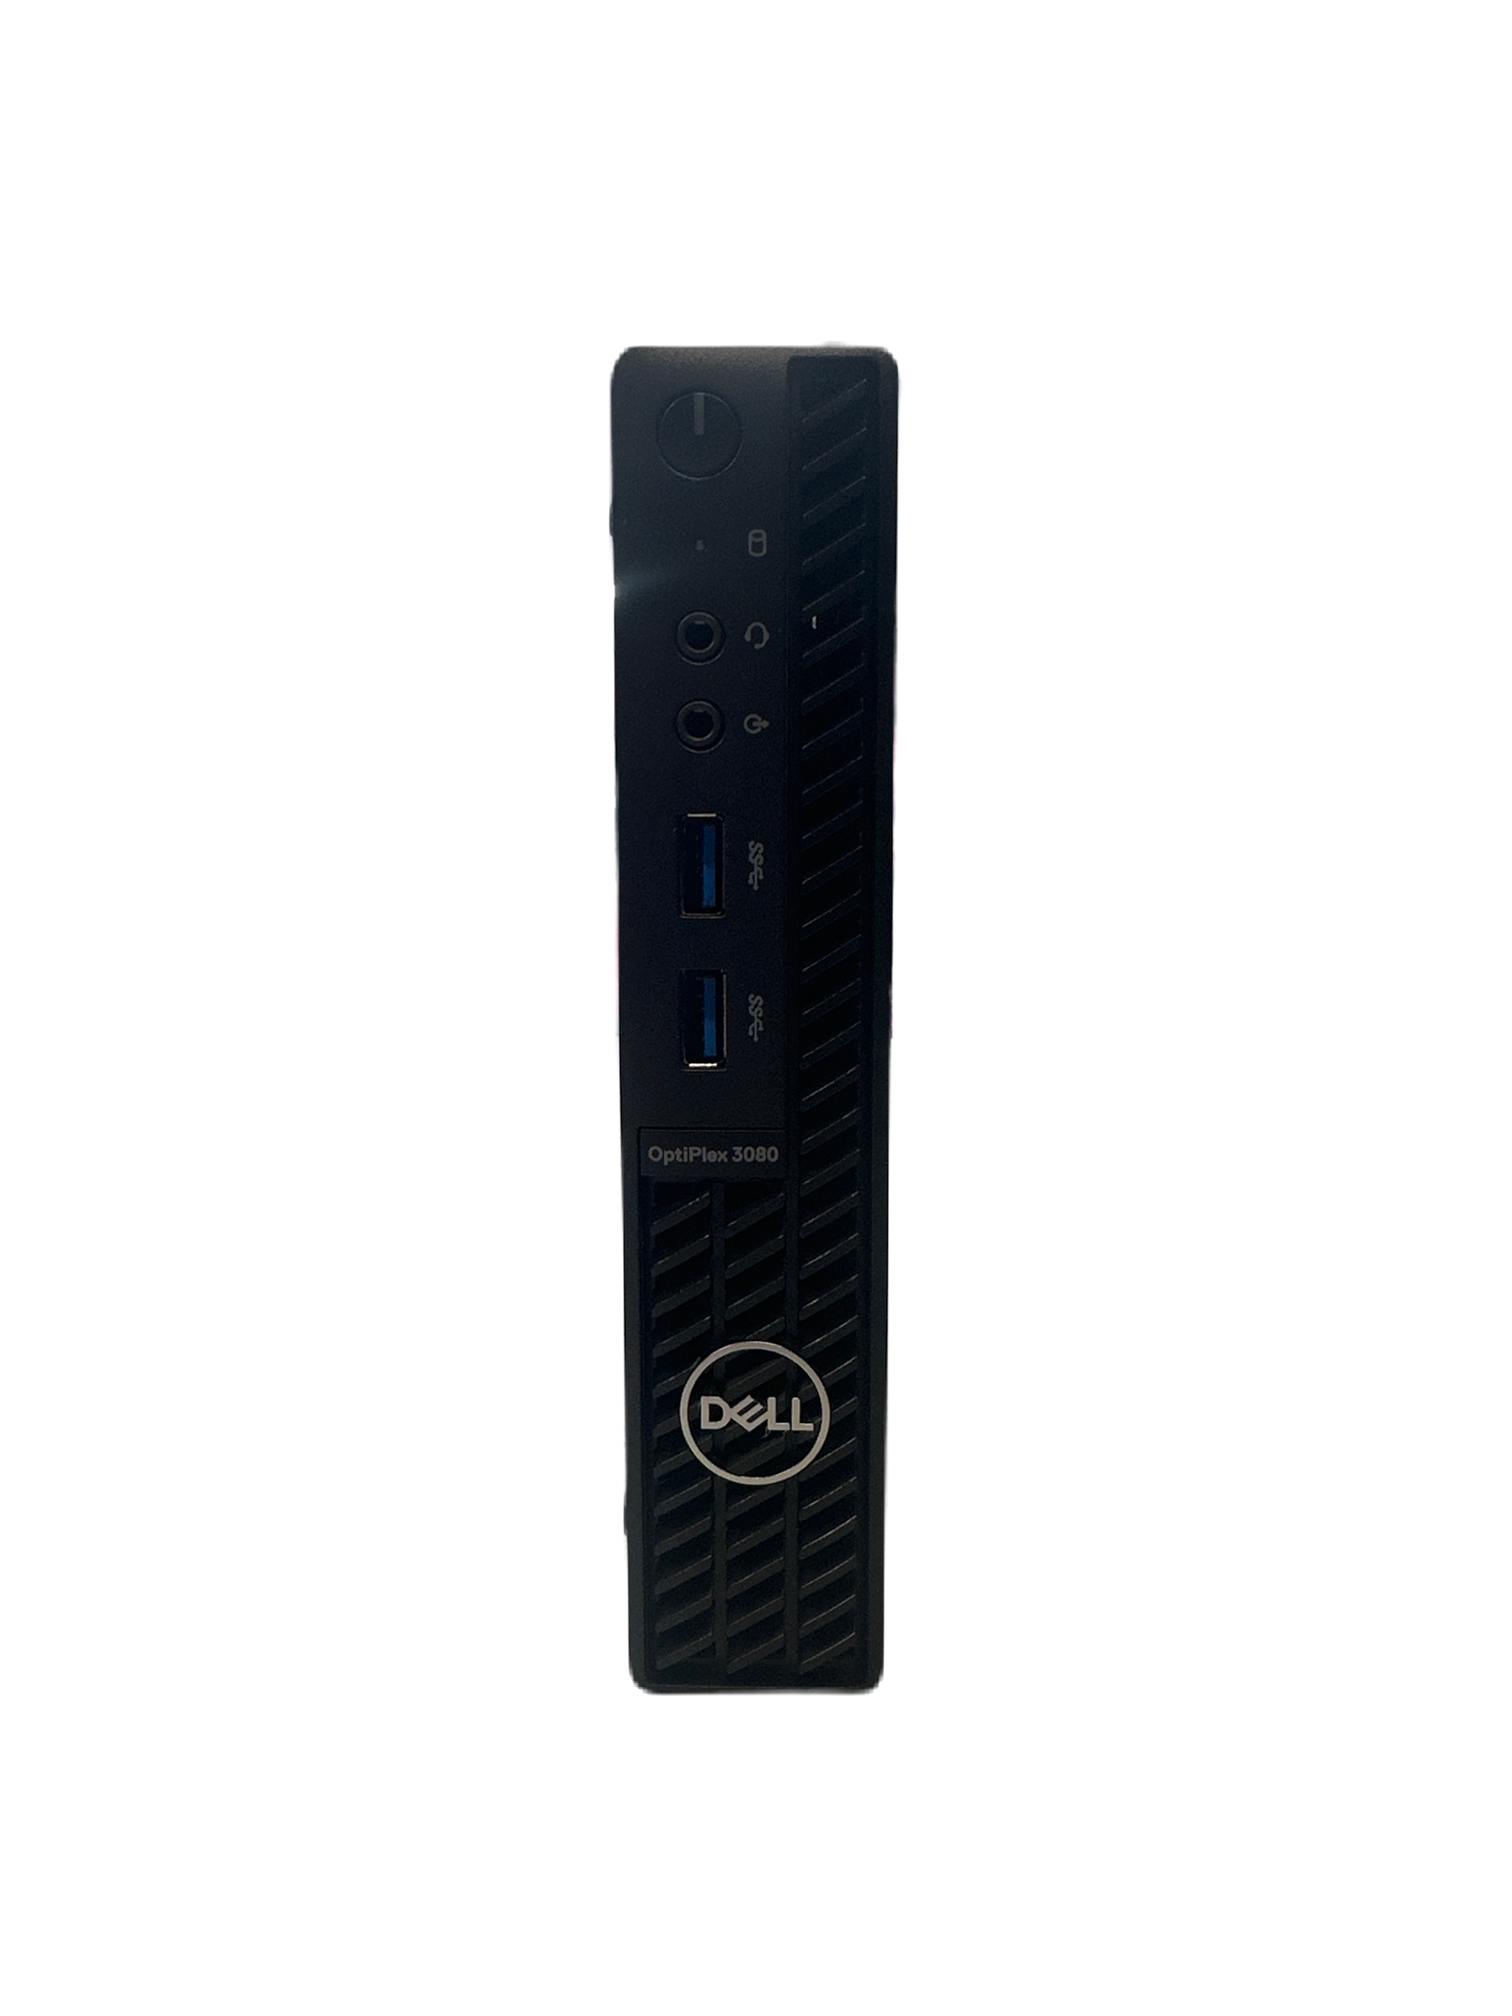 Dell Optiplex 3080 i5 8GB 256GB SSD Windows 10